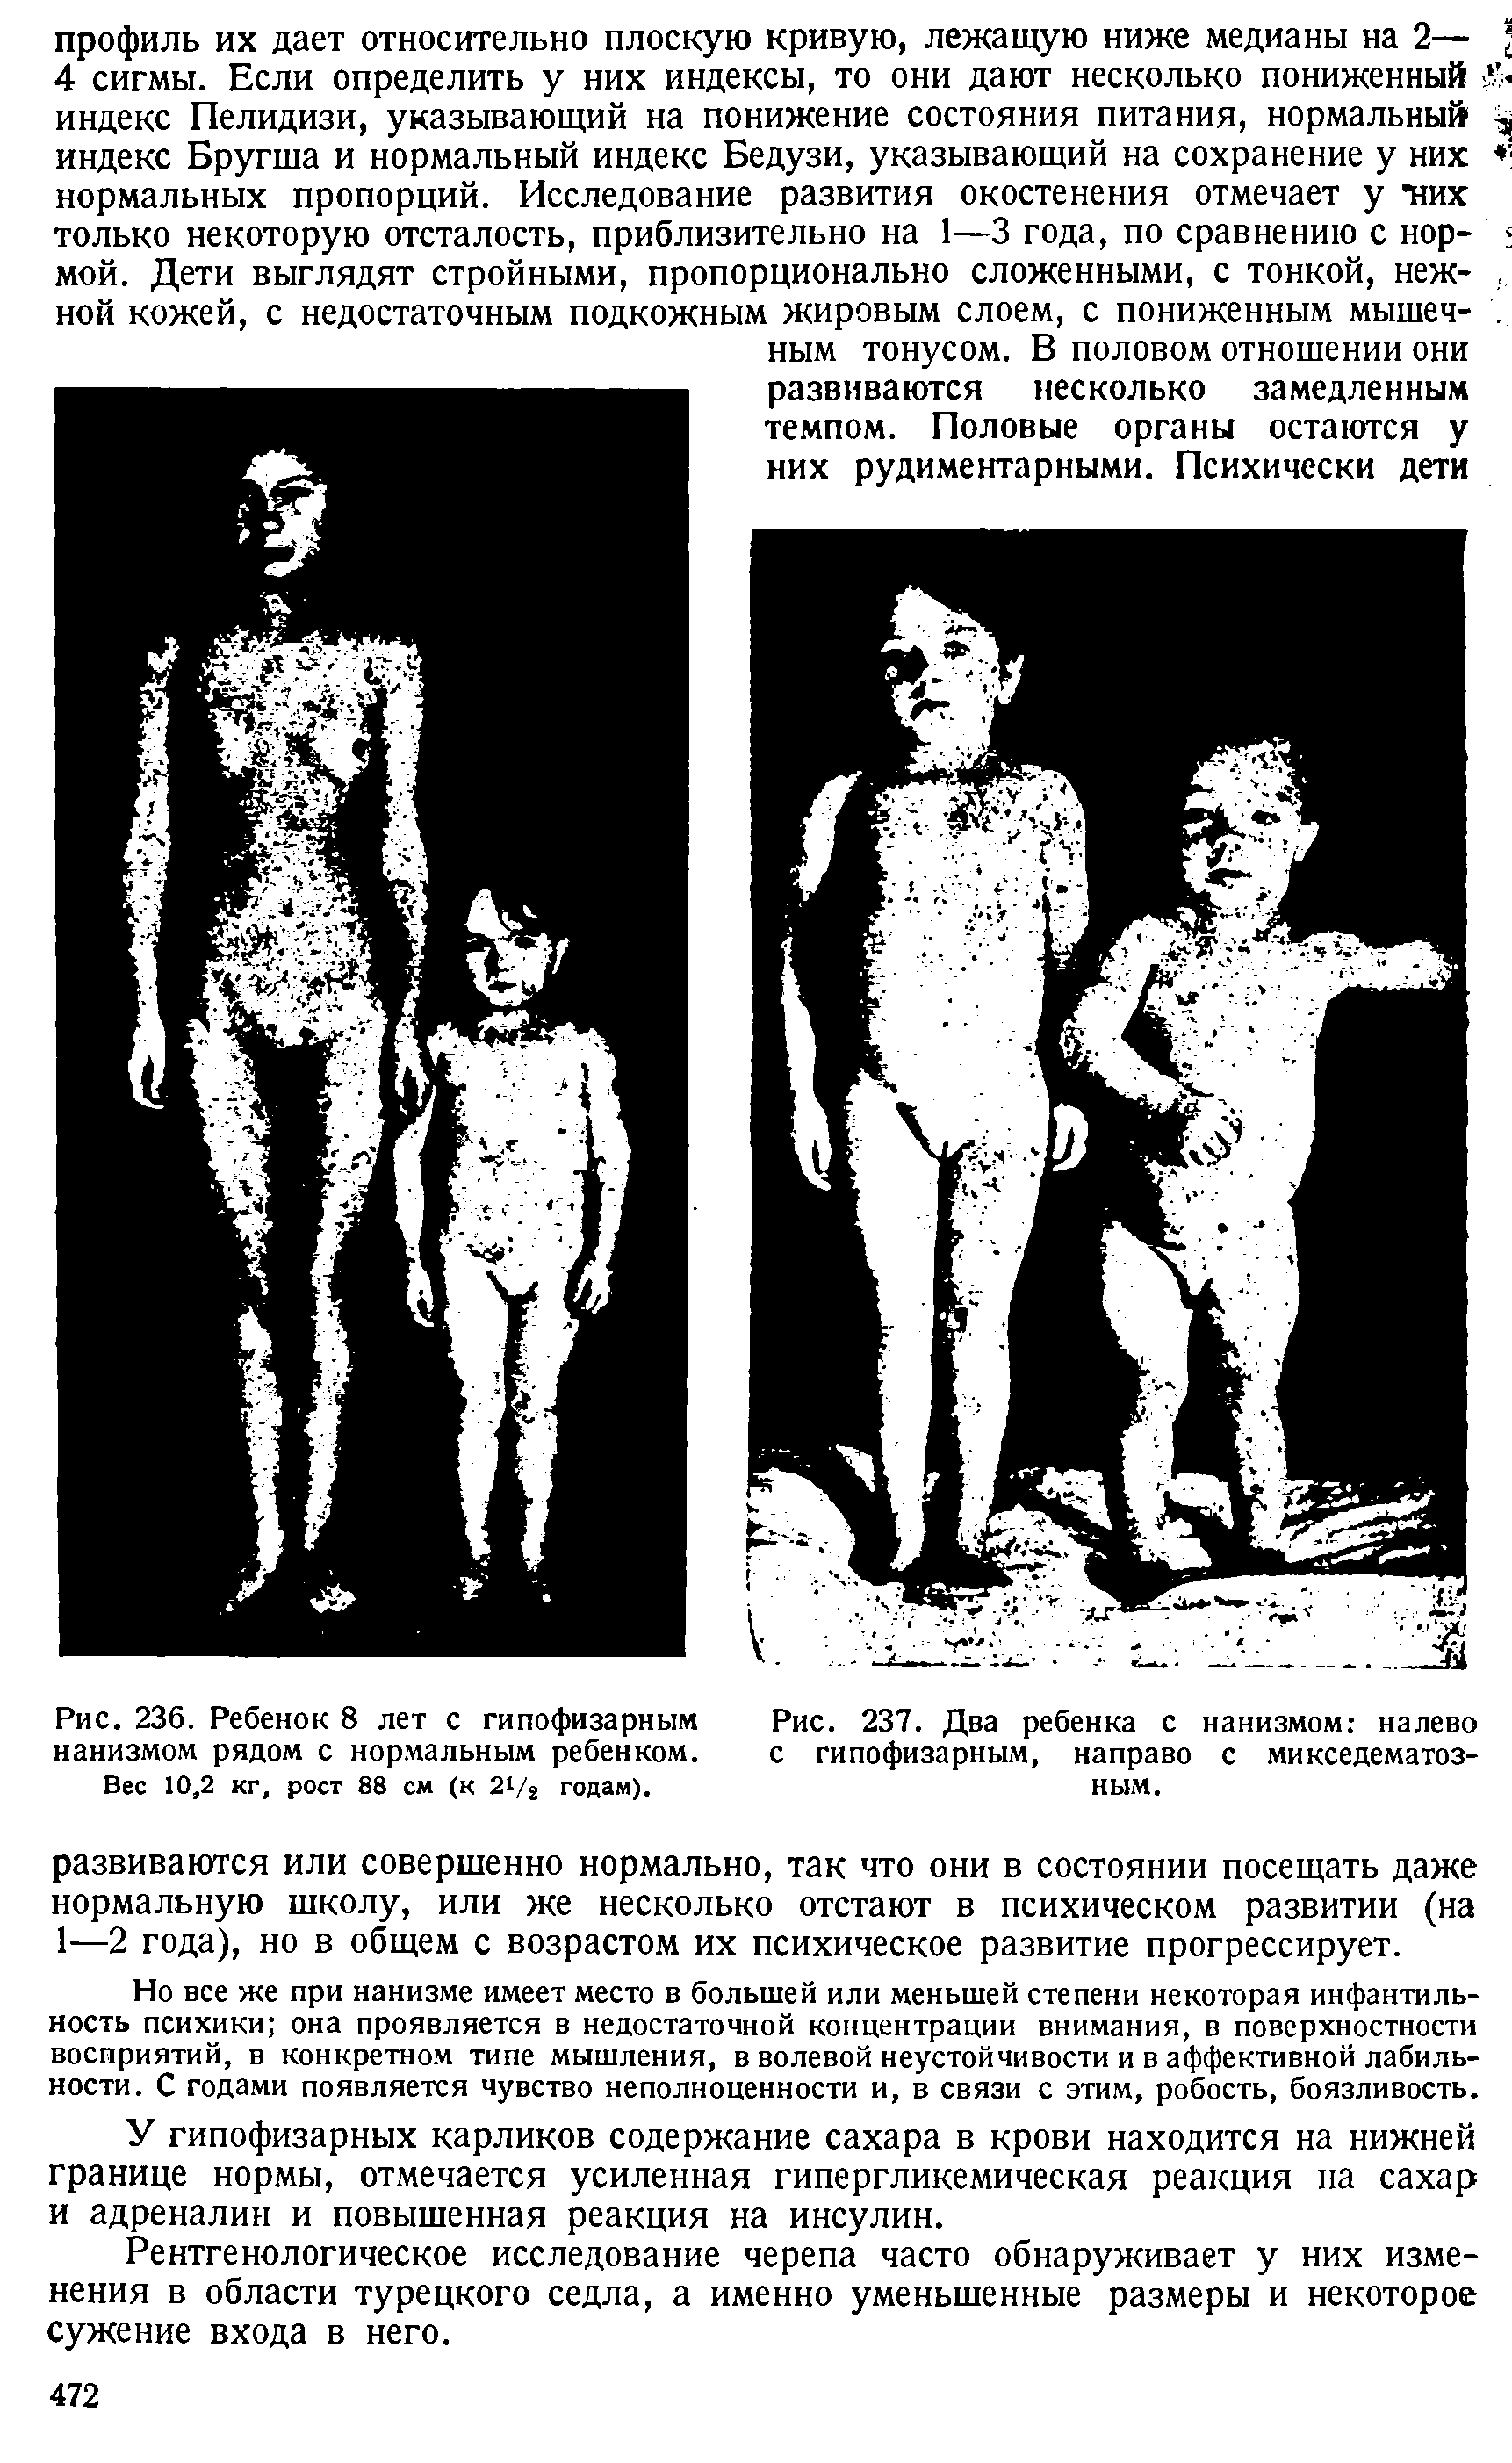 Рис. 237. Два ребенка с нанизмом налево с гипофизарным, направо с микседематозным.